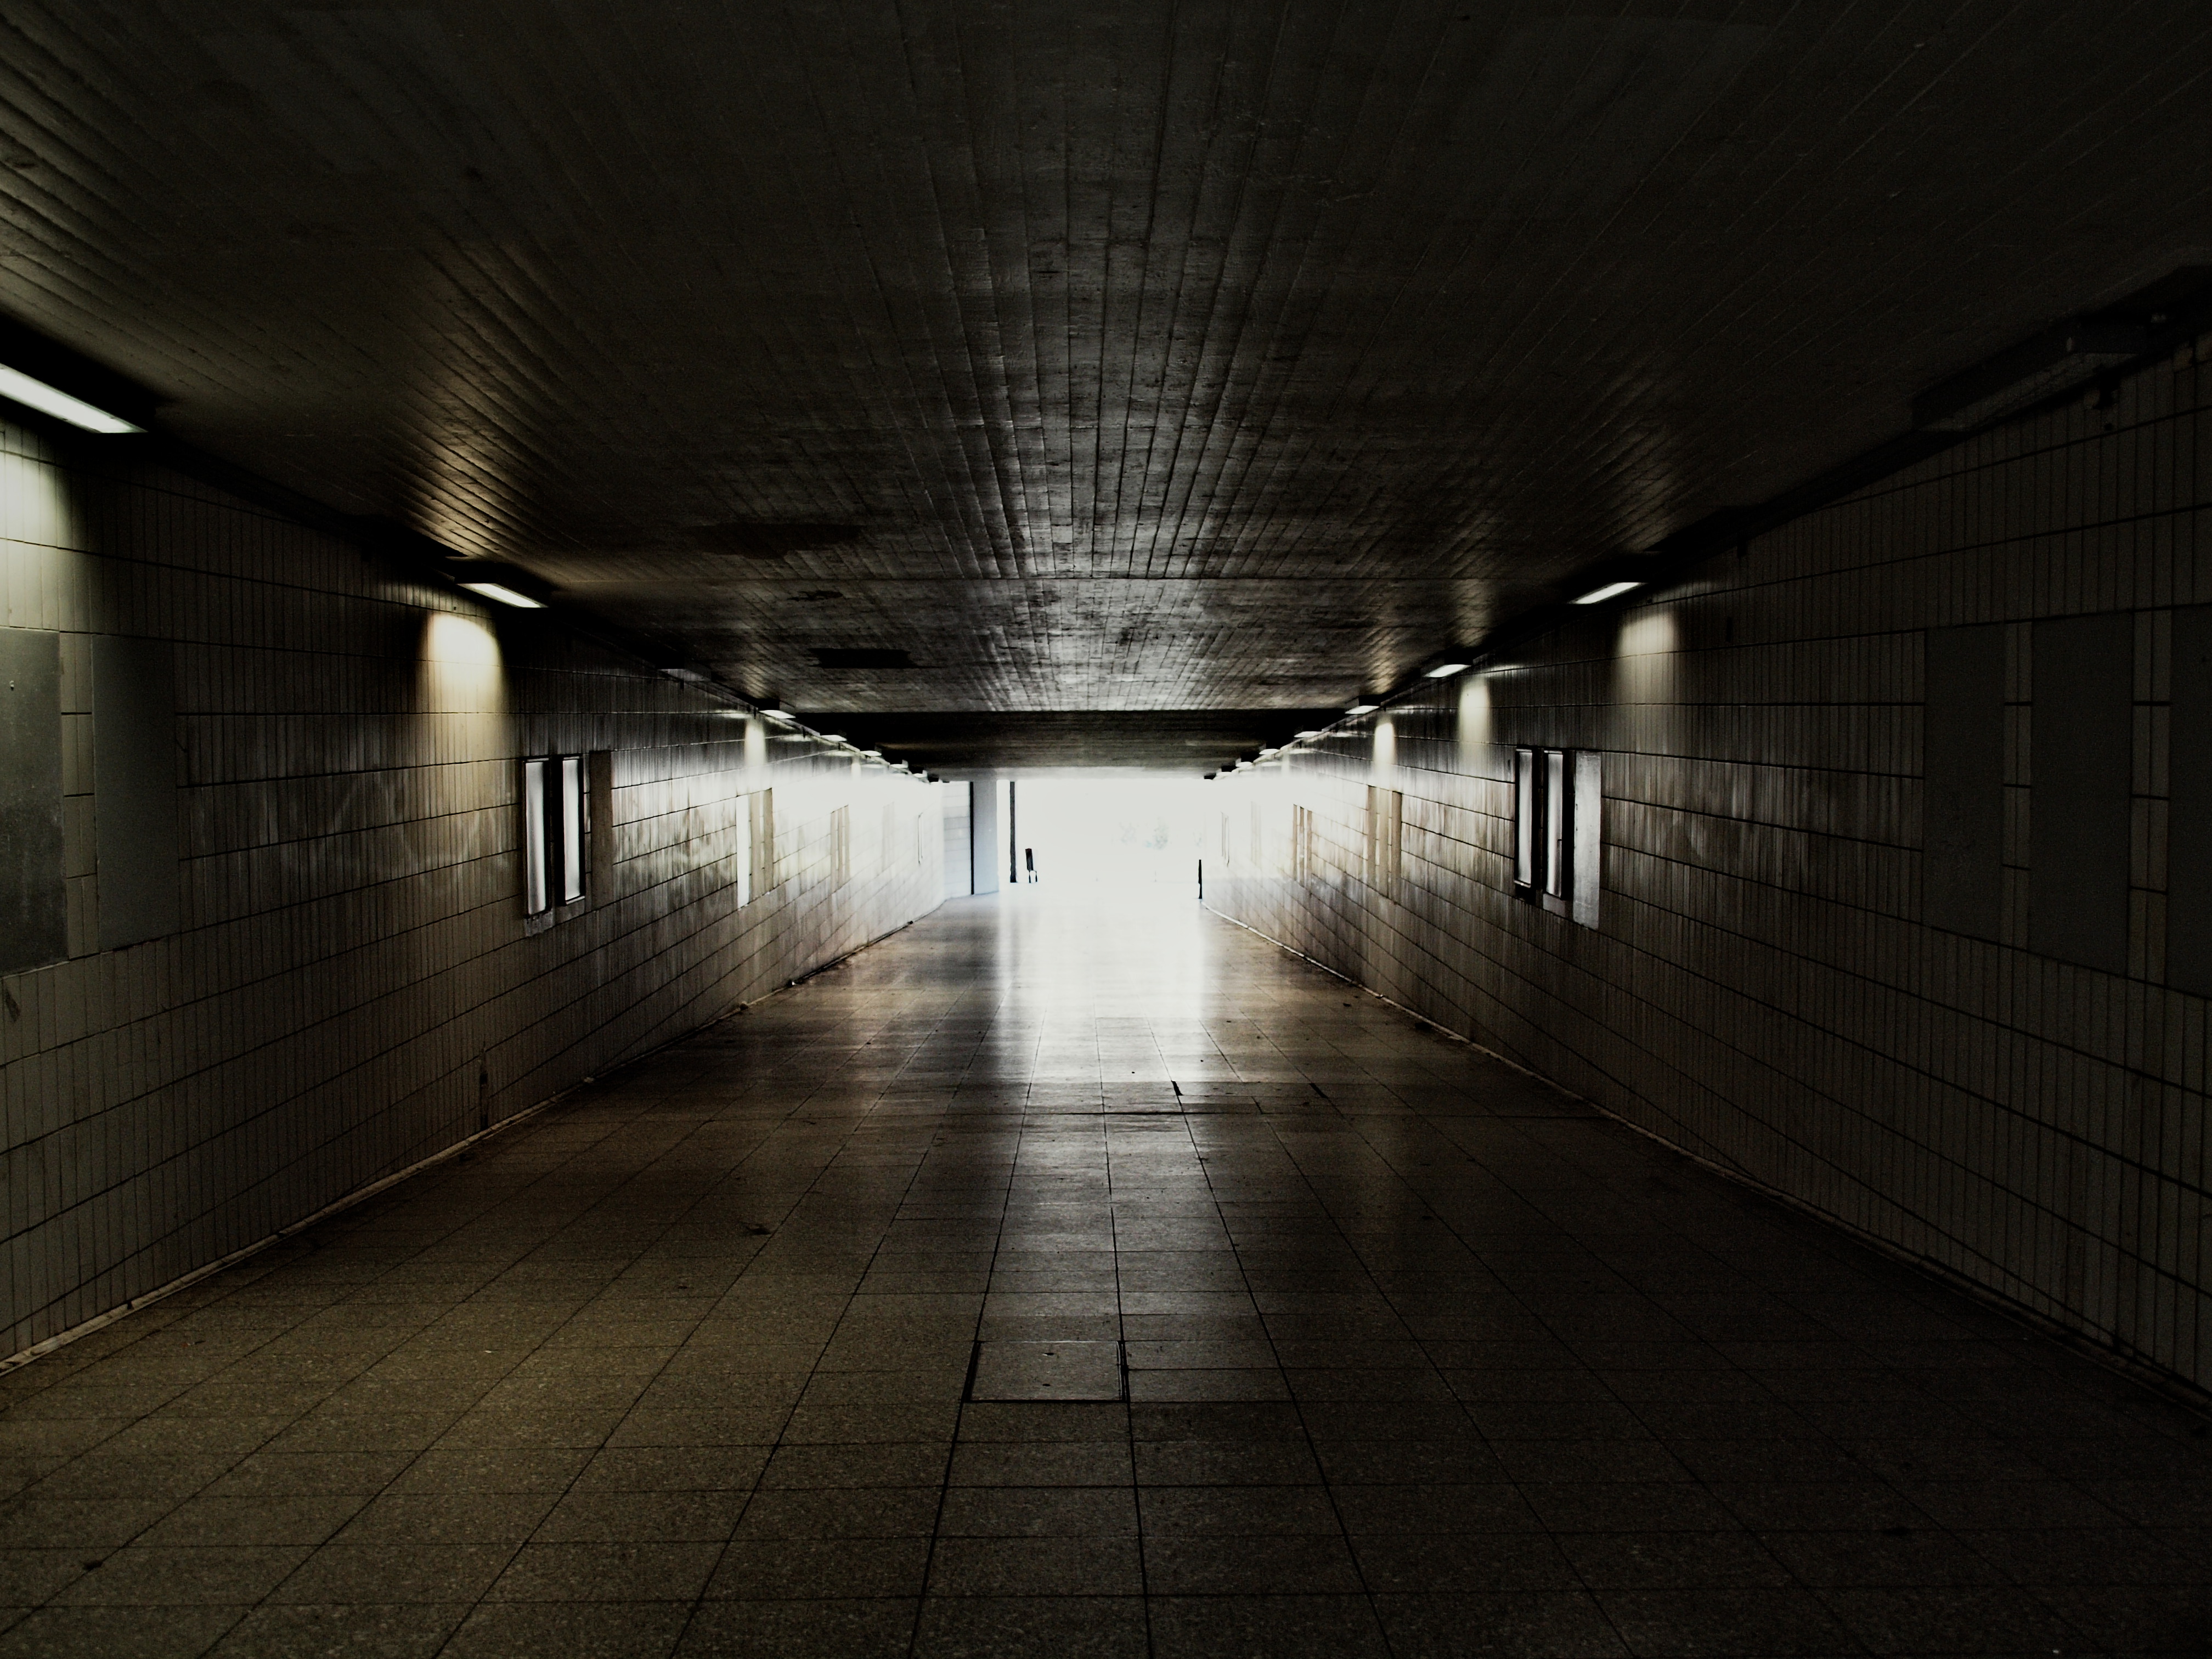 images/Treffpunkt/Westbahnhoftunnel.jpg